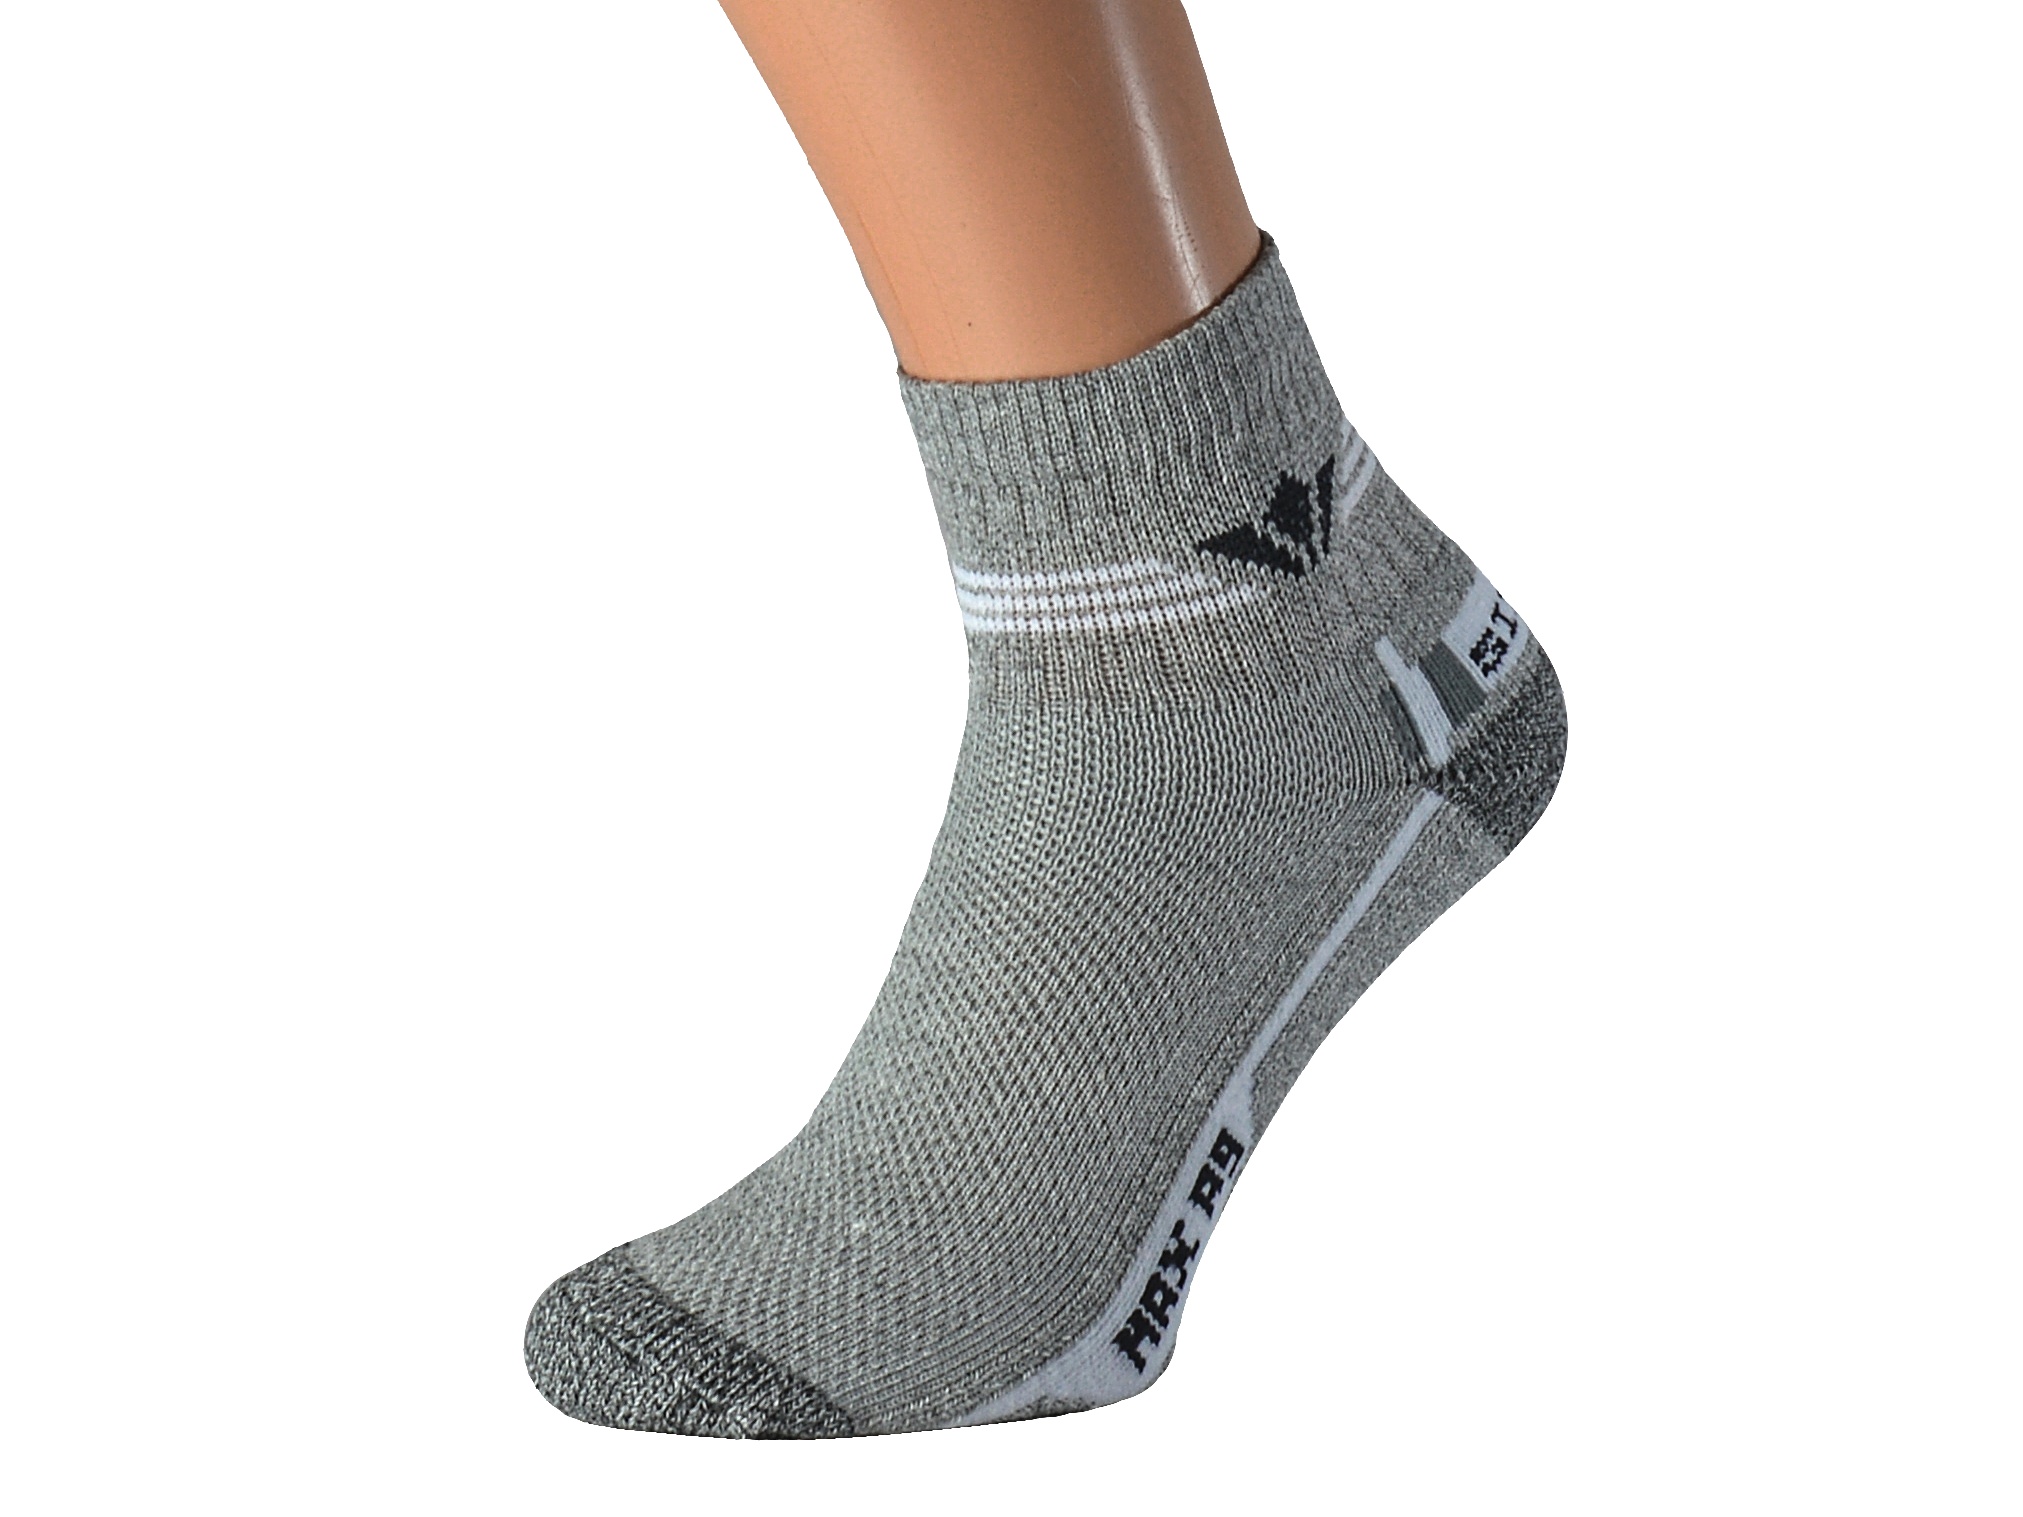 Froté ponožky se stříbrem KRASITO KUKS Barva: Světle šedé, Velikost: EUR 36-38 (UK 4-5)